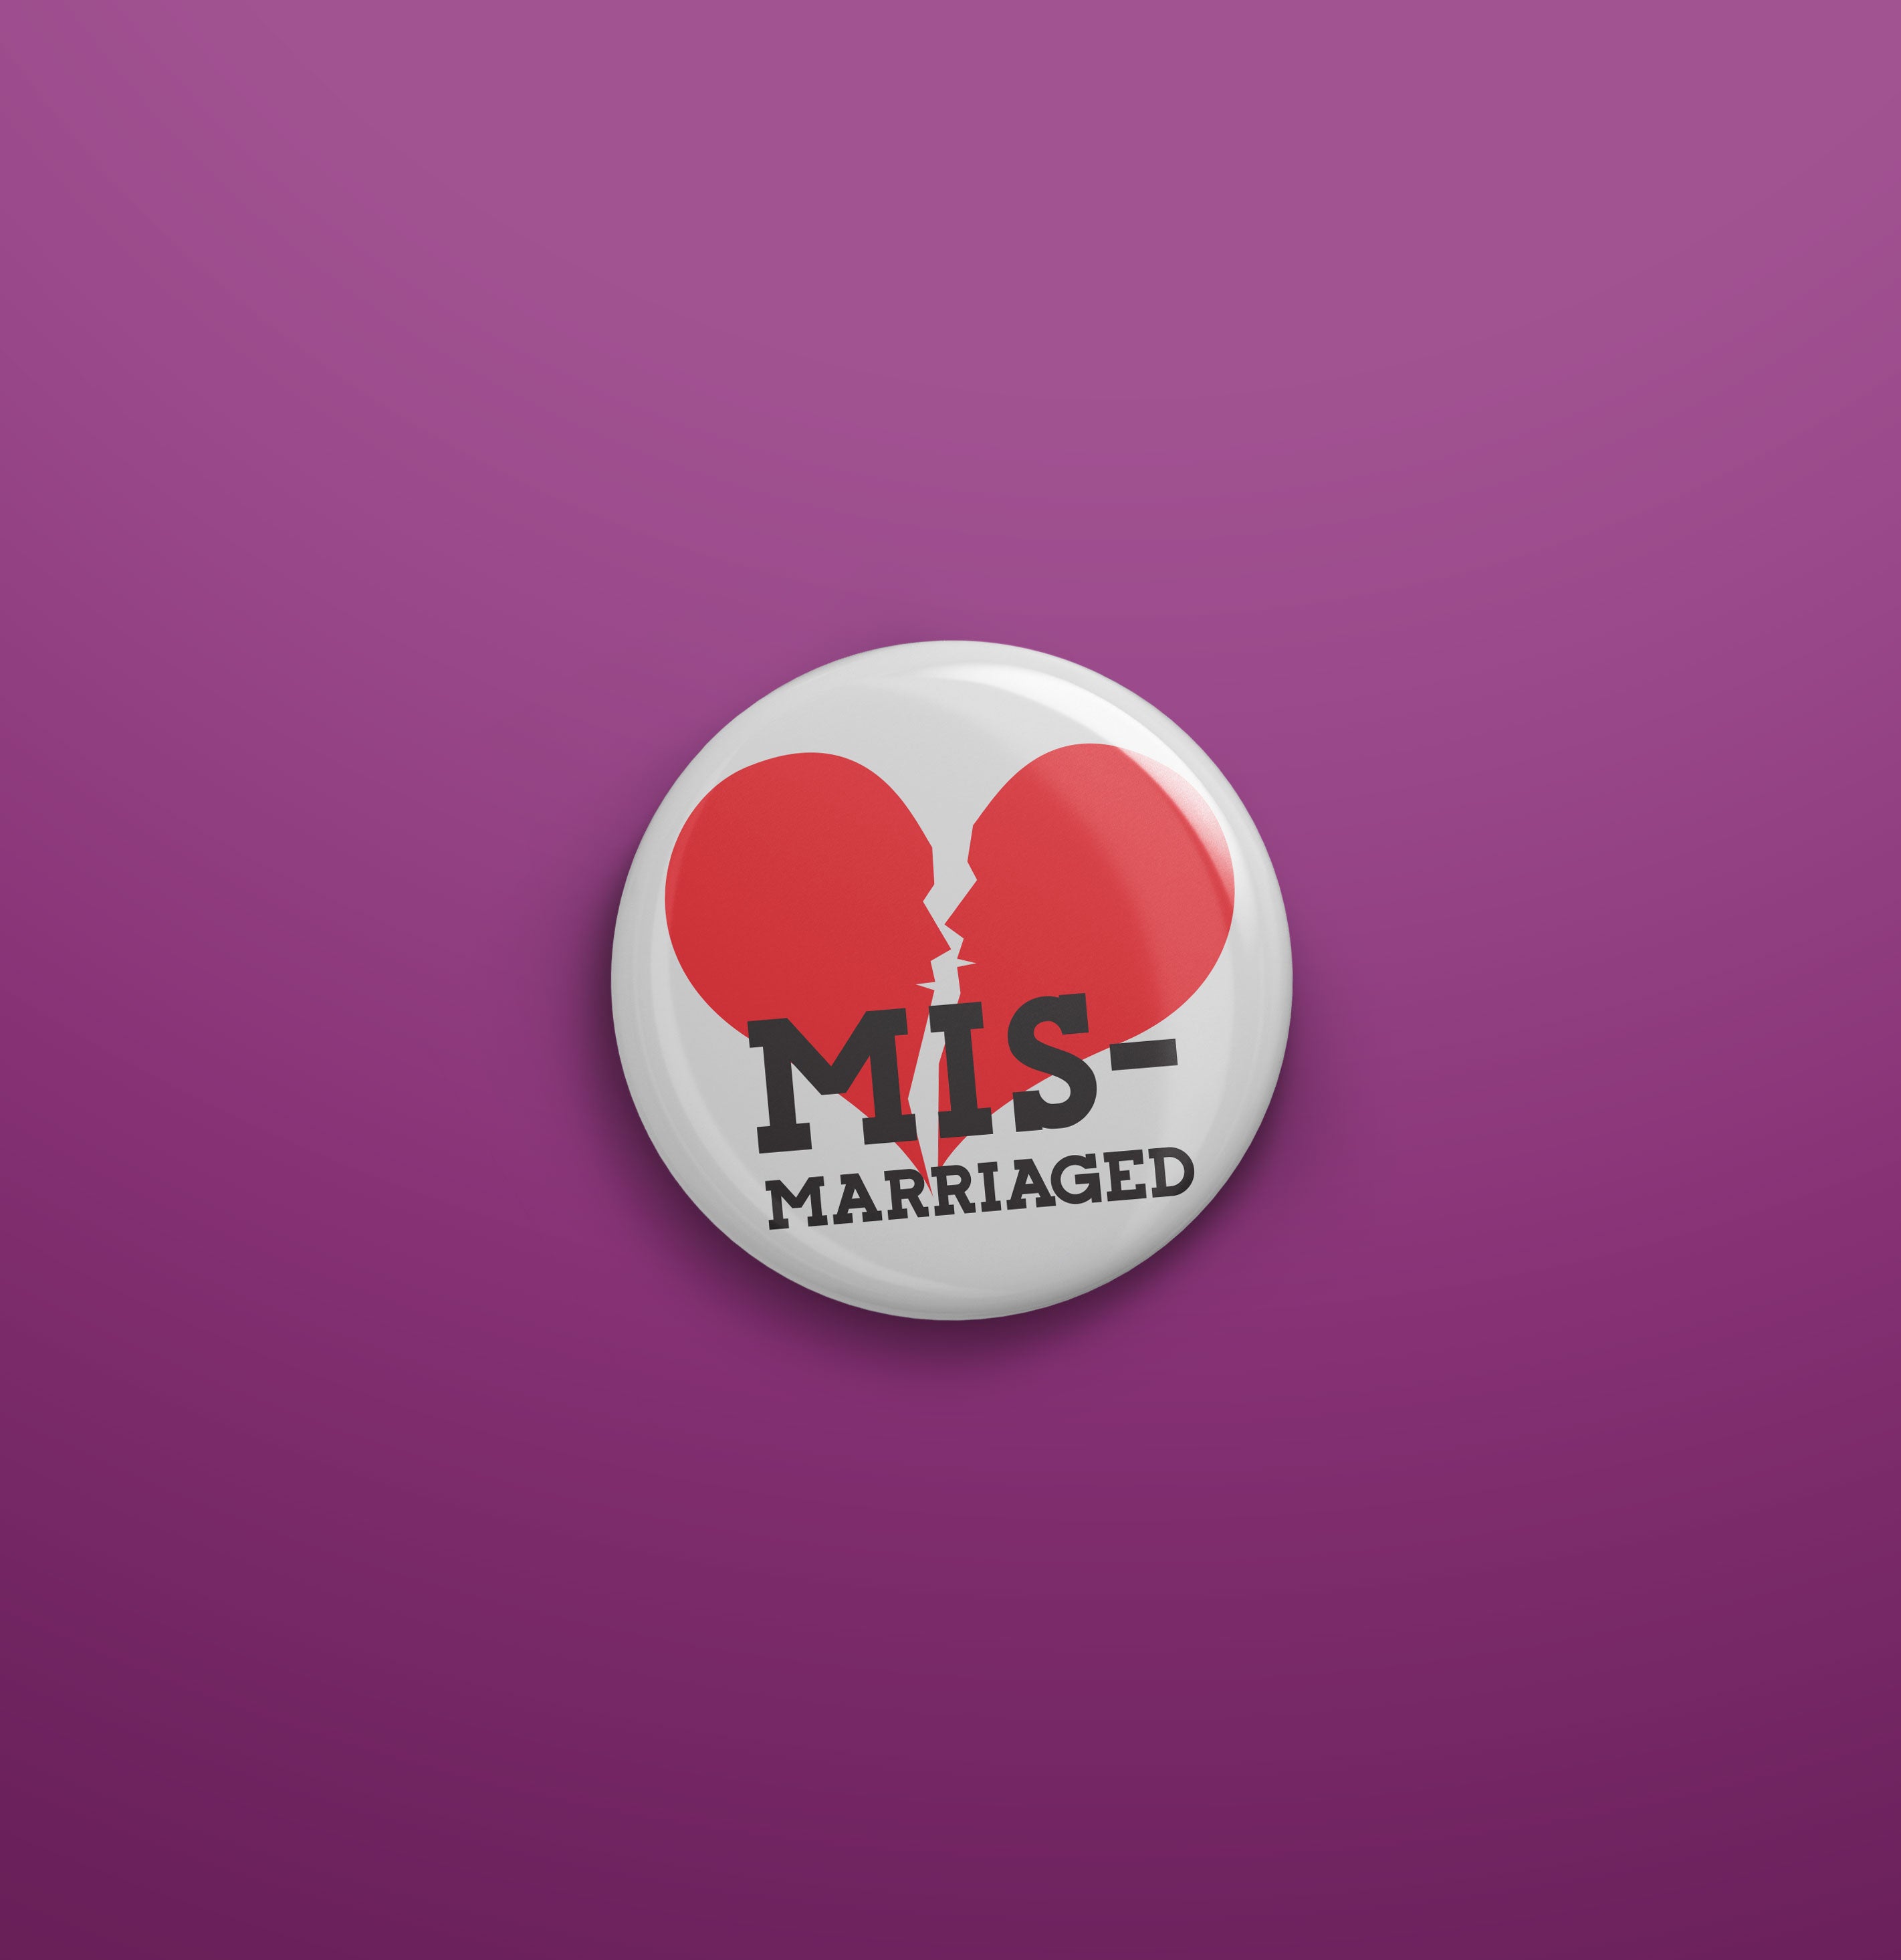 Mismarriaged